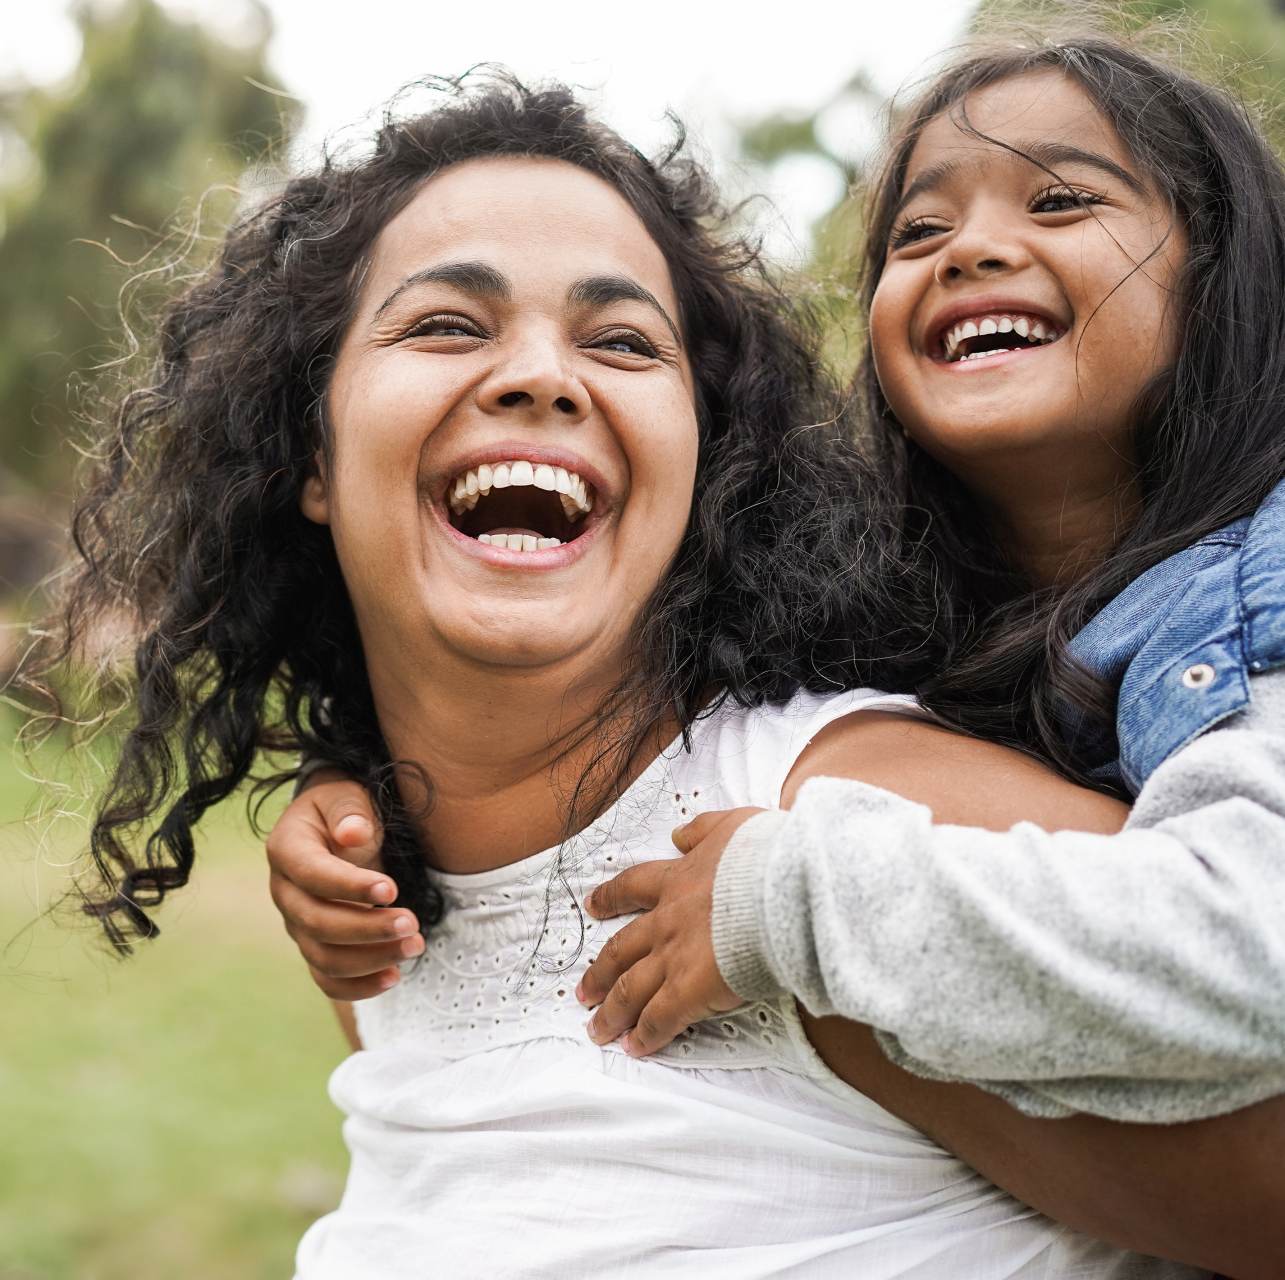 Eine lachende Mutter trägt ein lachendes Kind auf ihrem Rücken.